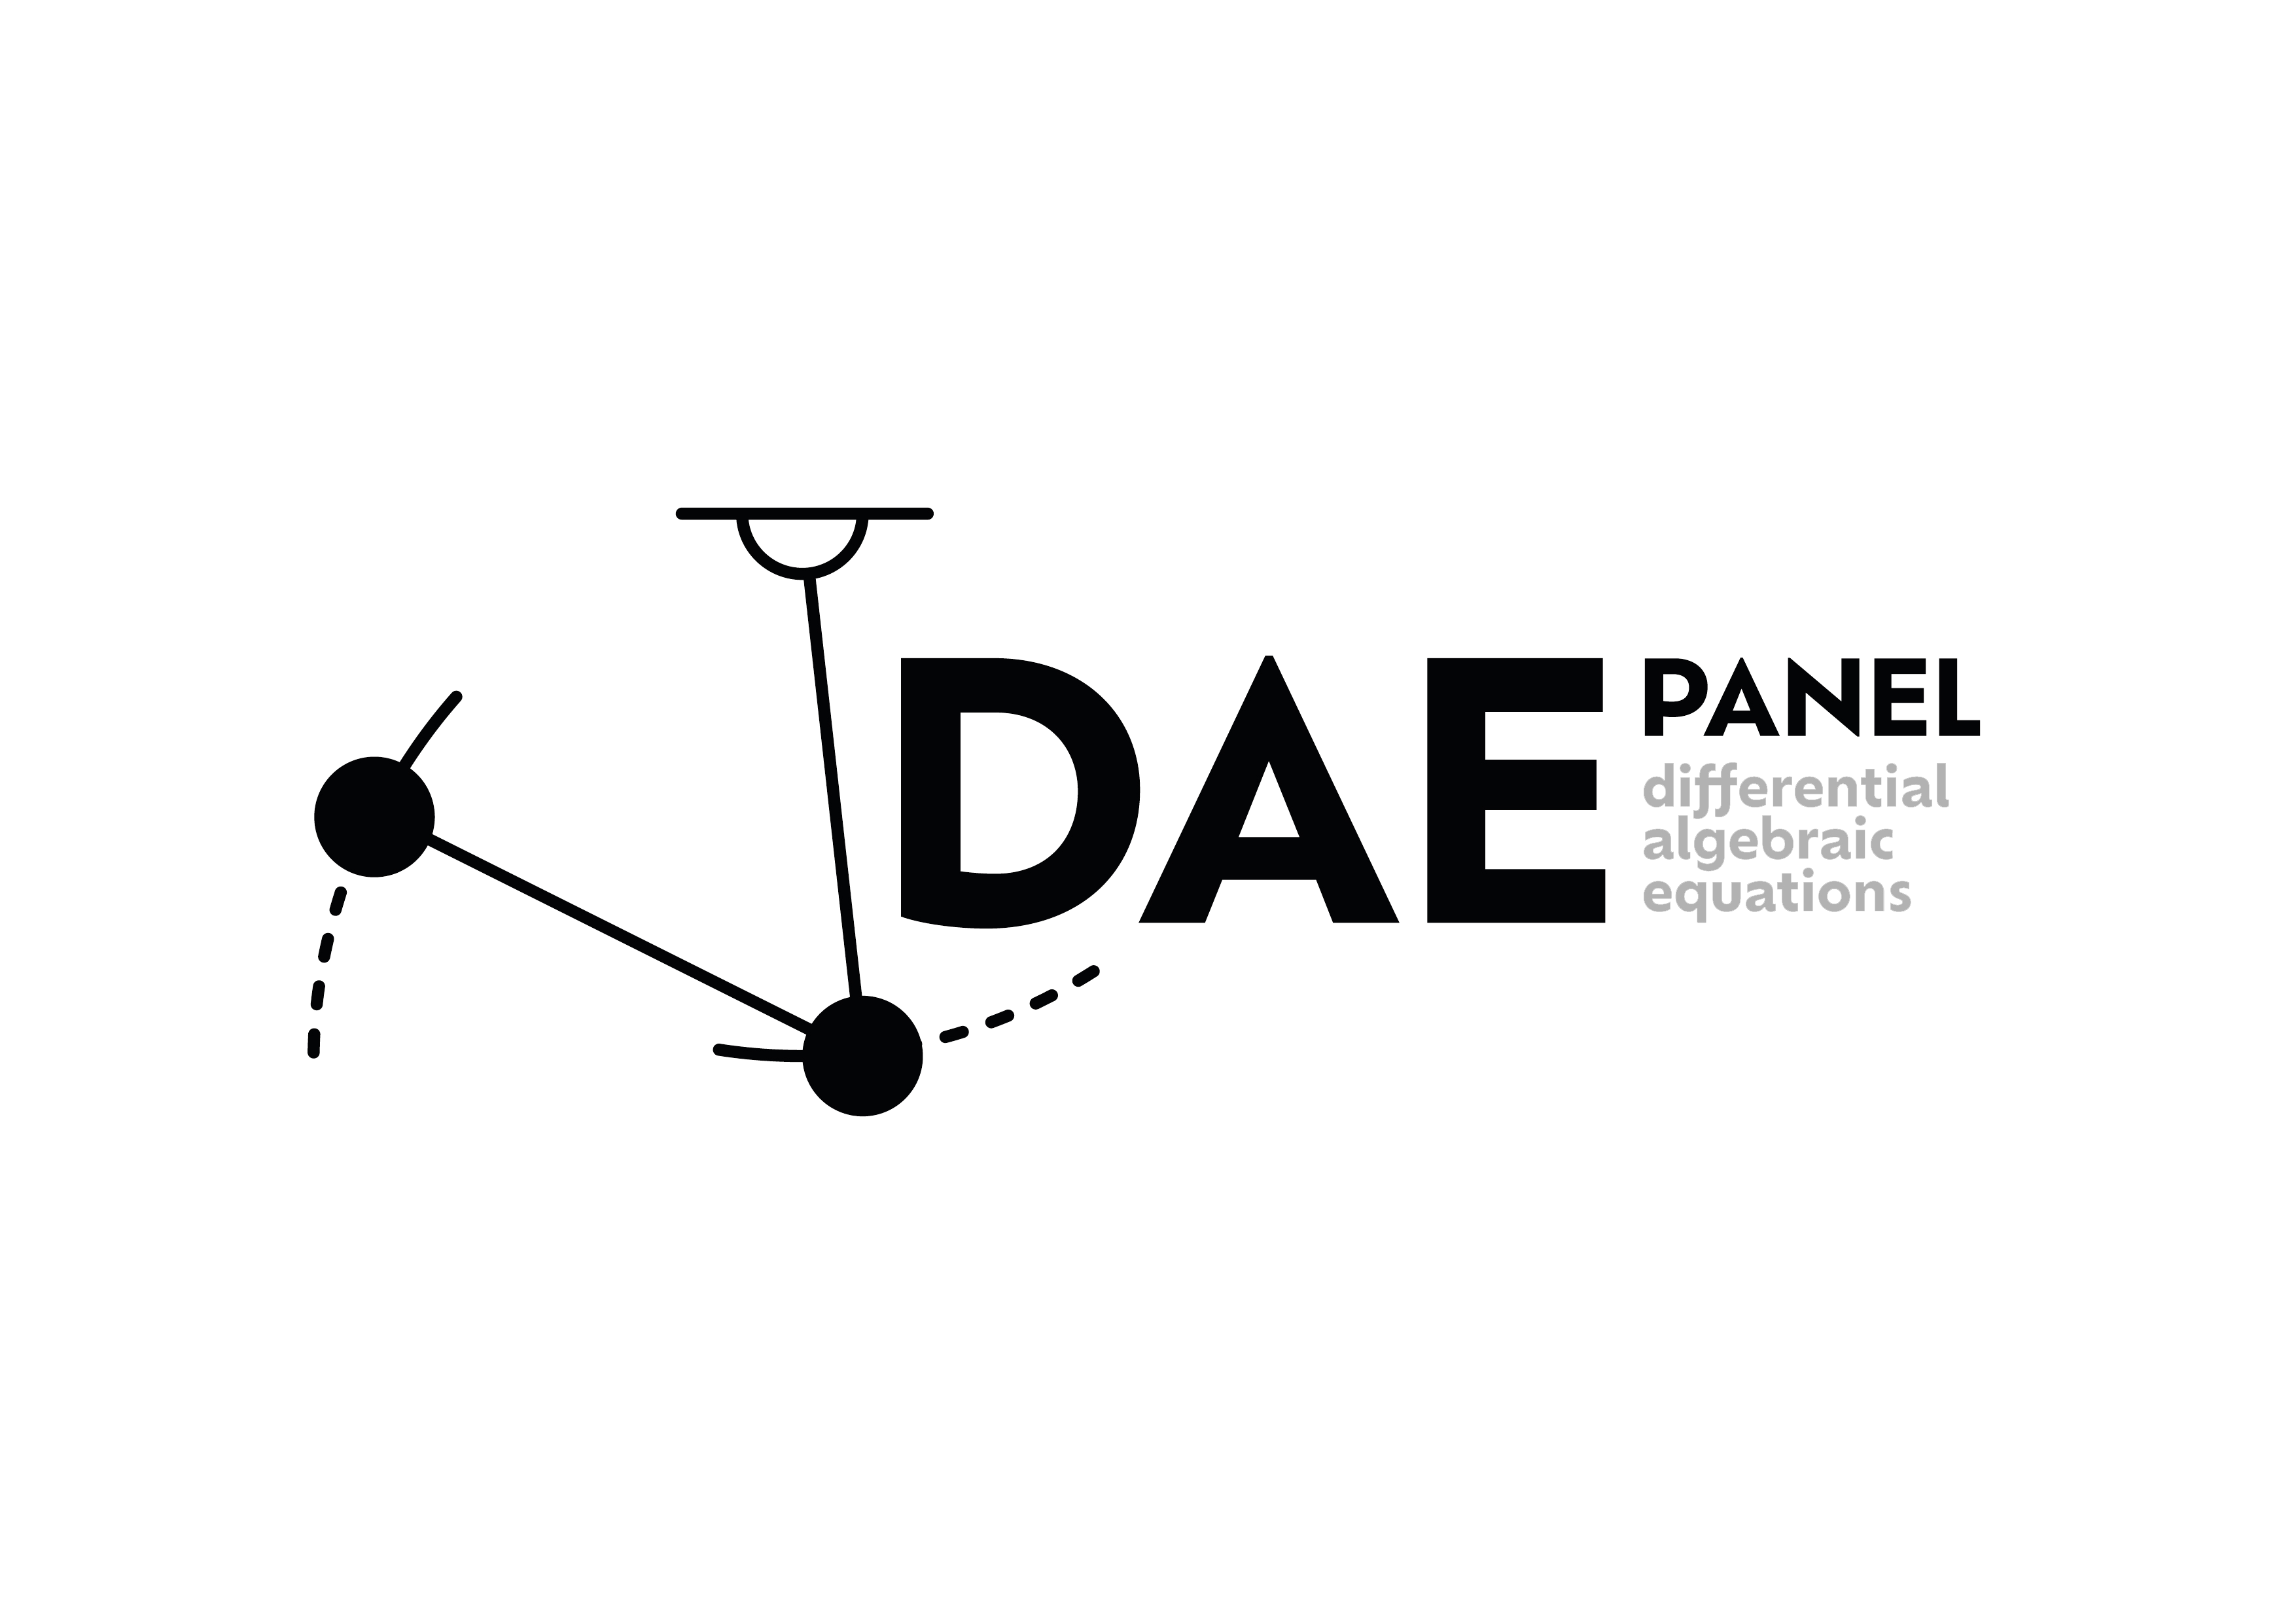 DAE Panel logo in black